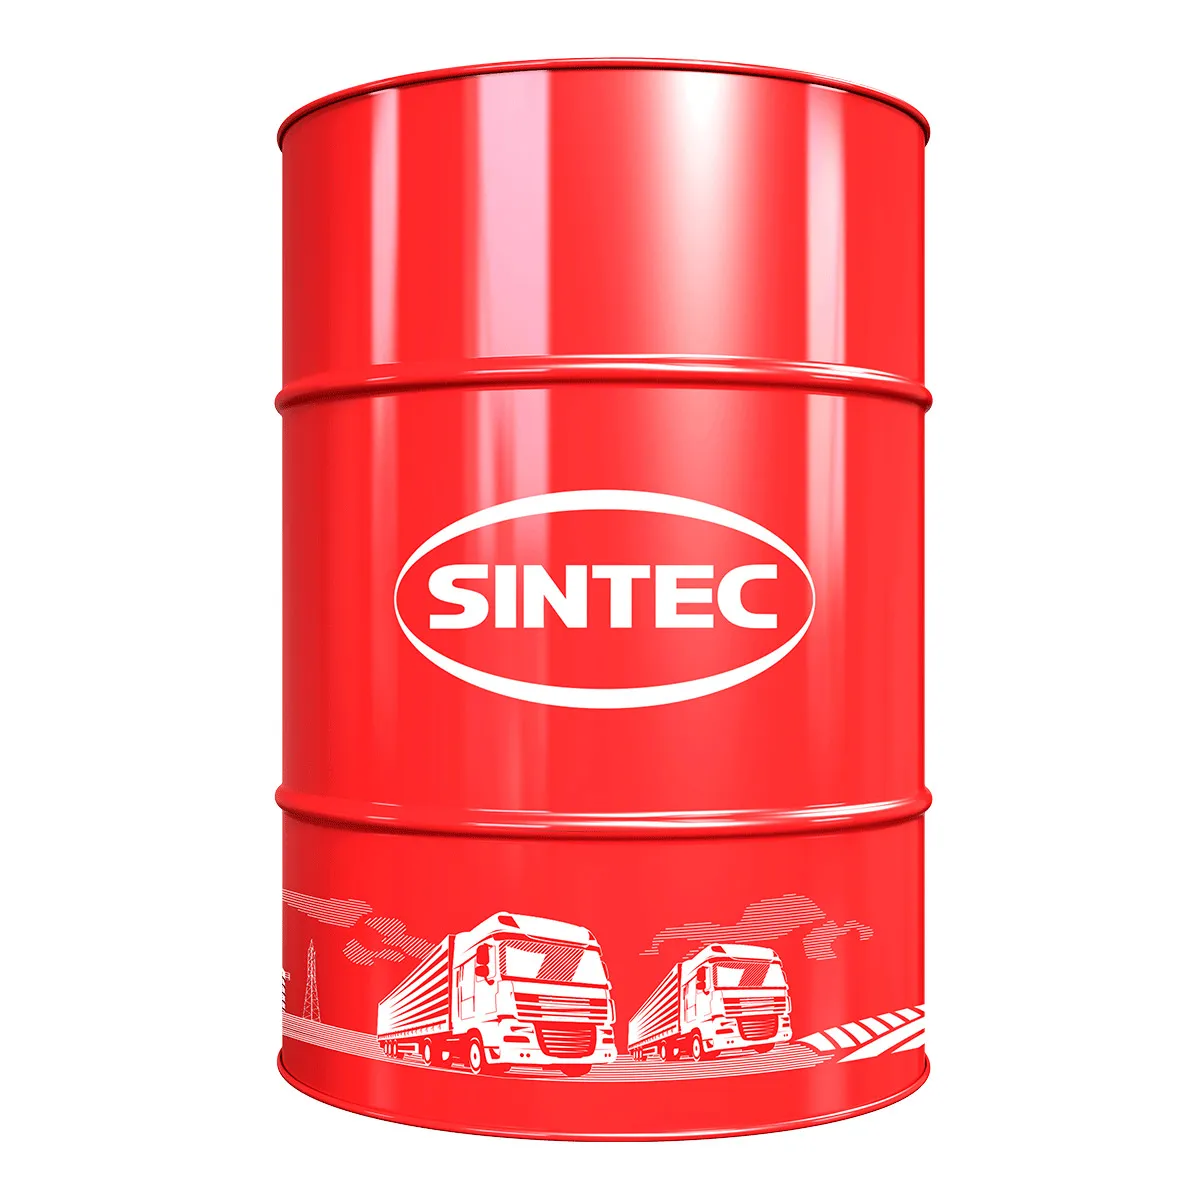 Гидравлическое масло SINTEC И-50А Гидравлические масла: описание, применение, свойства, где купить